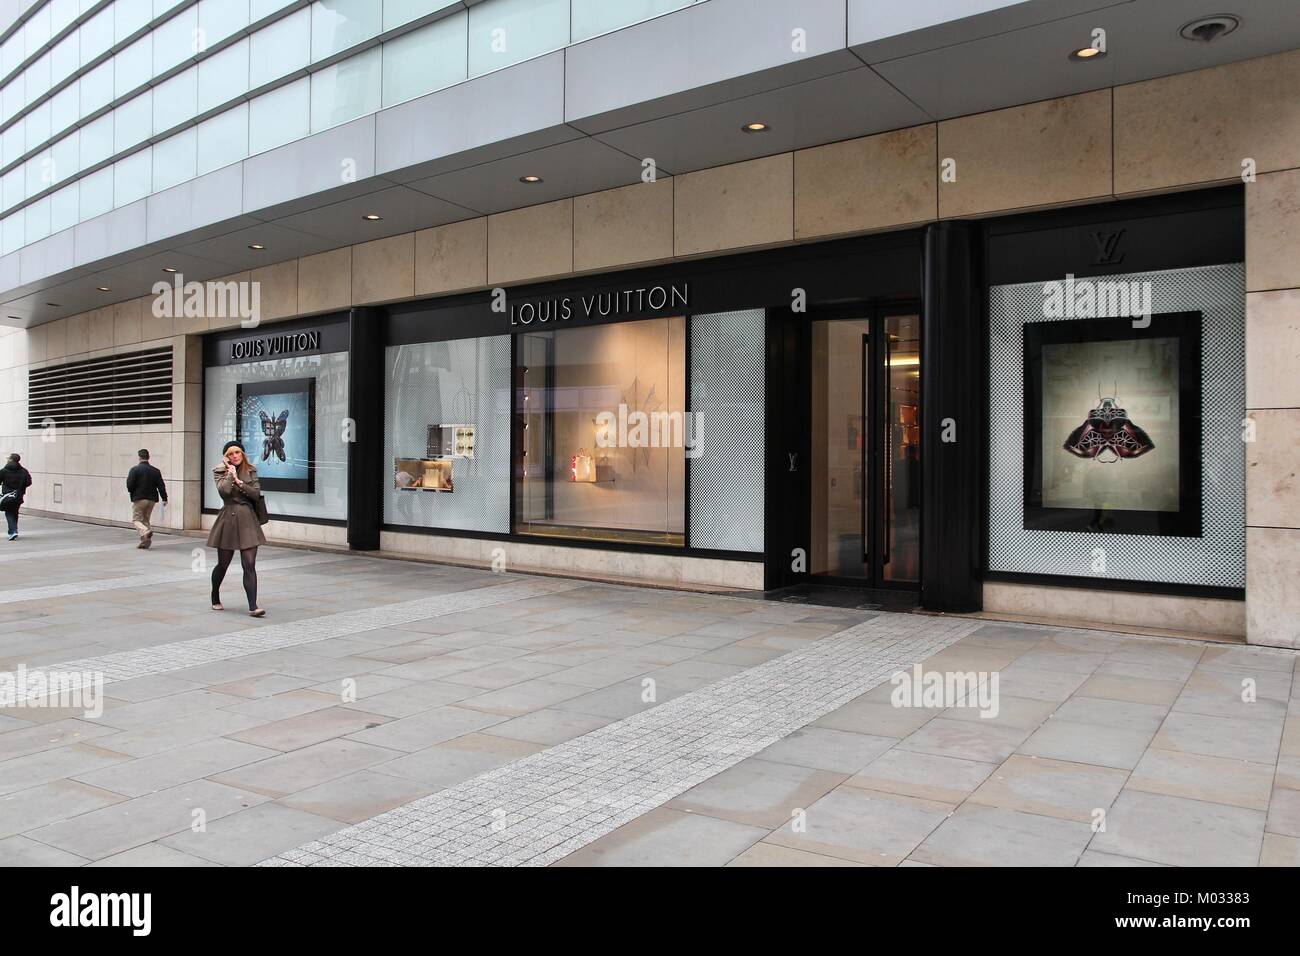 Louis Vuitton store – Stock Editorial Photo © grand-warszawski #172371750